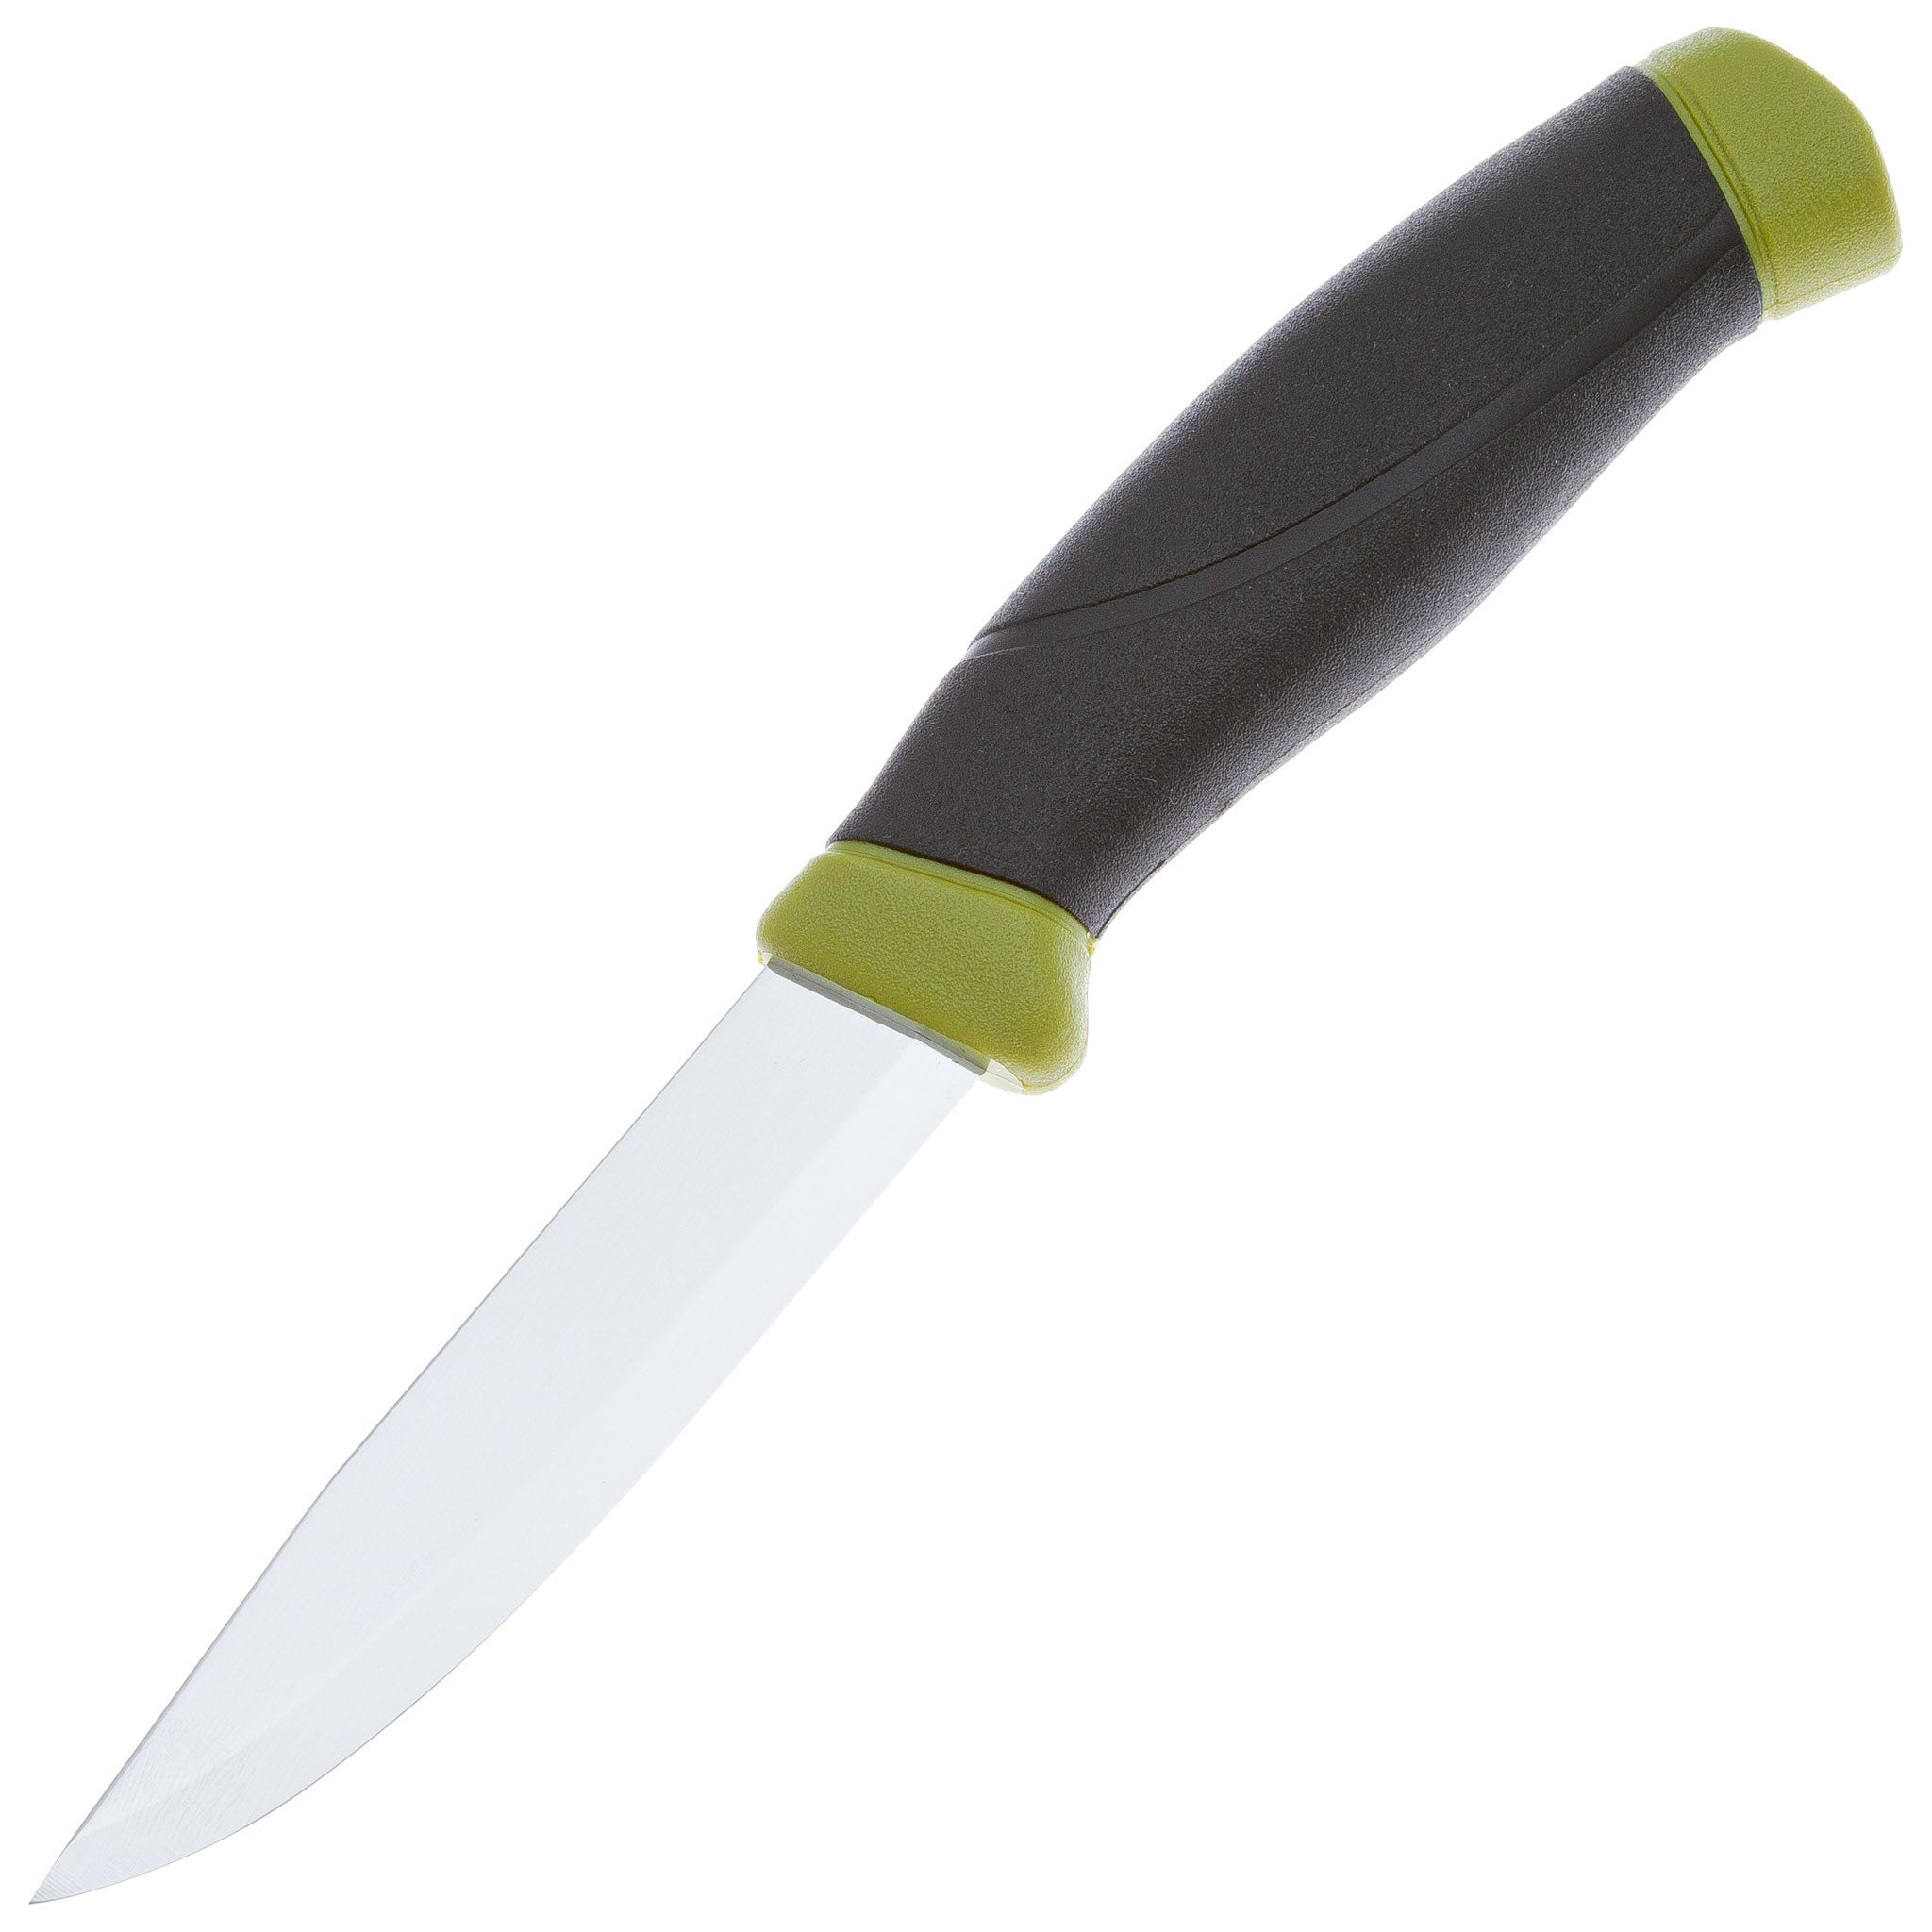 Нож с фиксированным лезвием Morakniv Companion, сталь Sandvik 12C27, рукоять резина, olive green, Mora, Ножи Mora Companion